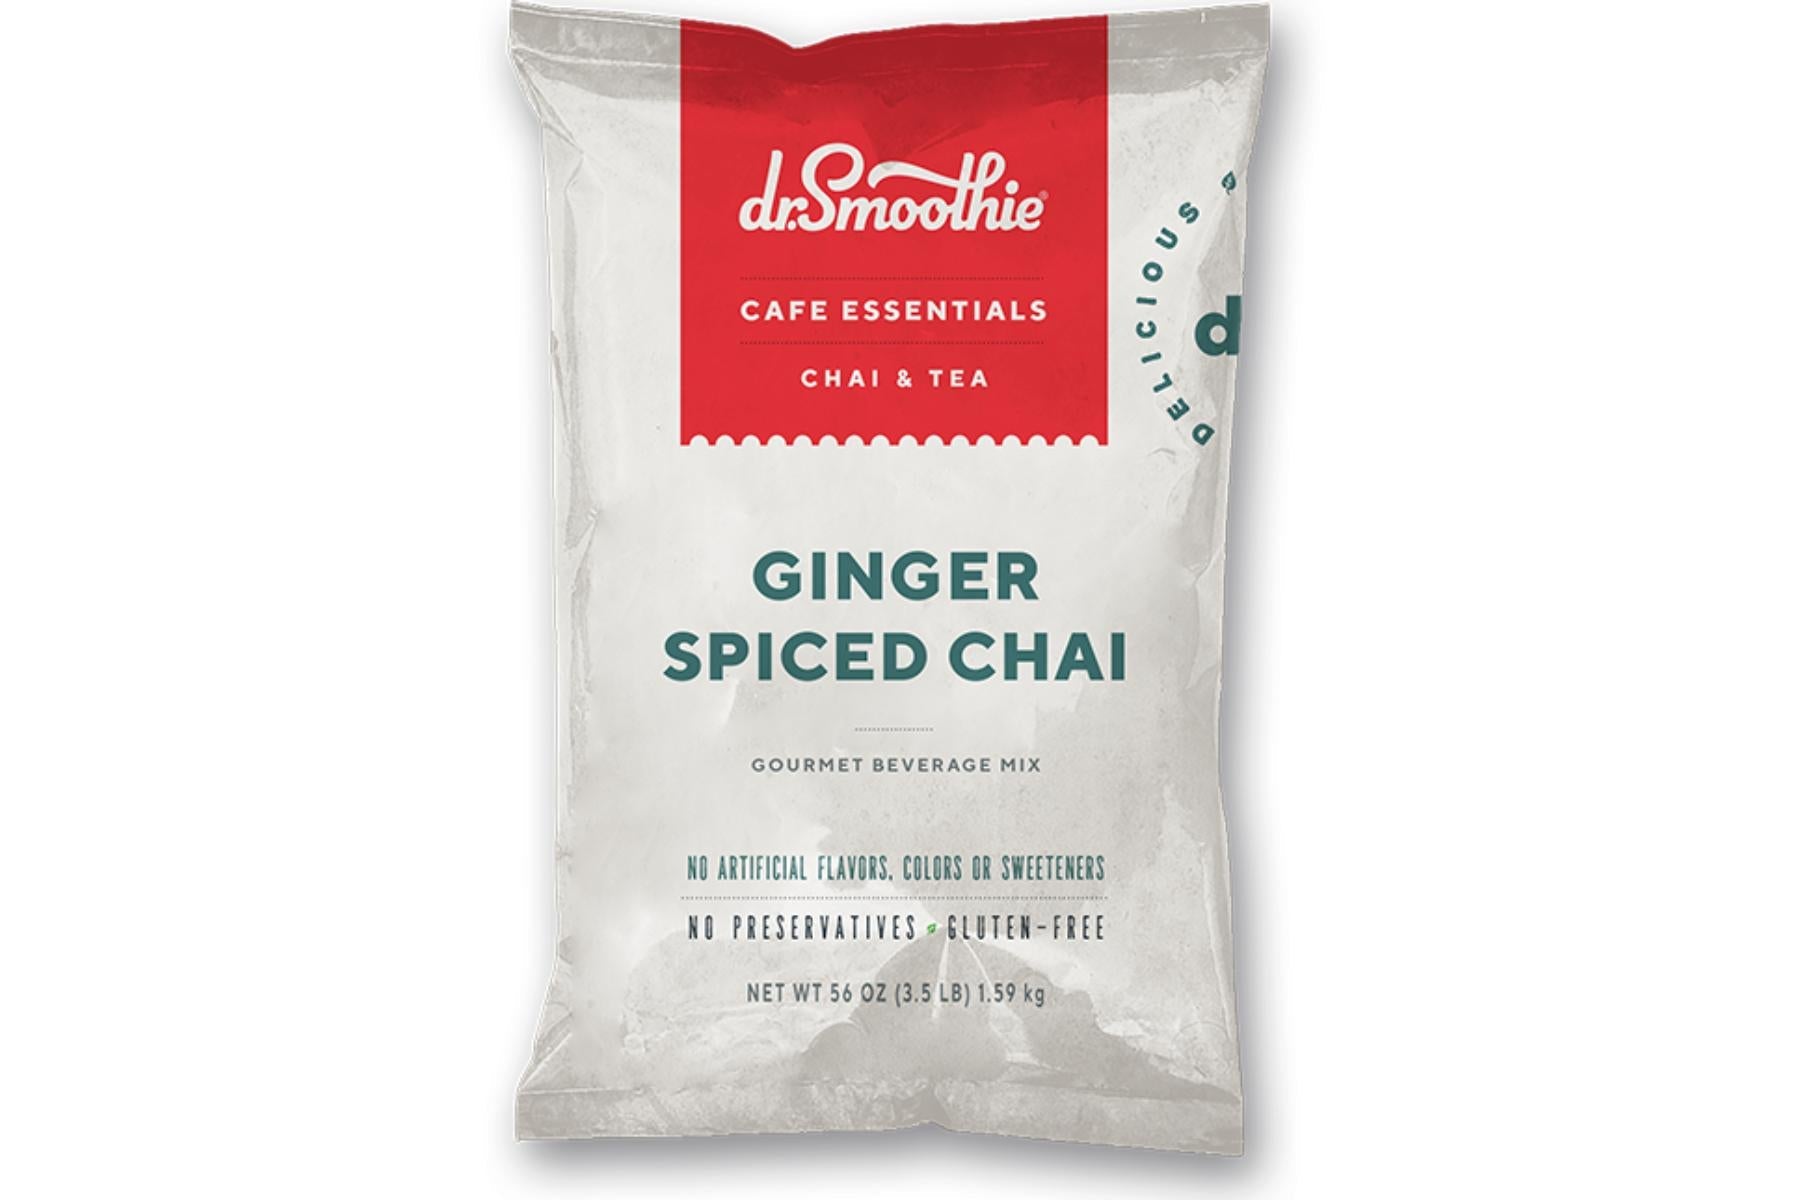 Dr. Smoothie Cafe Essentials Chai & Tea - 3.5lb Bulk Bag: Ginger Spiced Chai